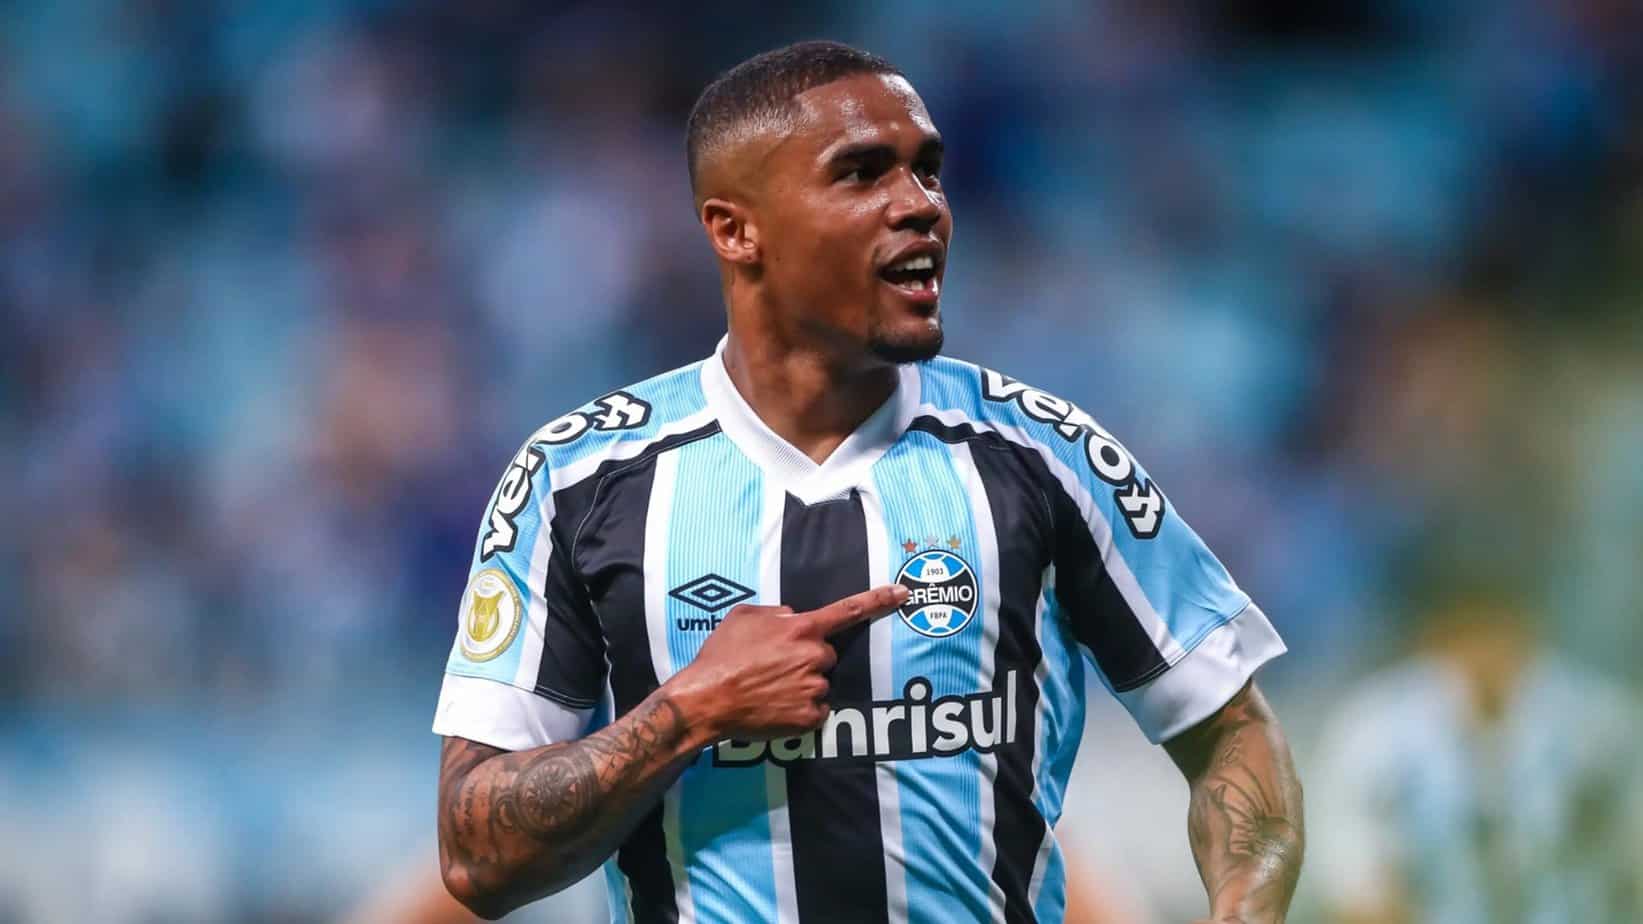 Grêmio vs. Fluminense Preview and Free Pick